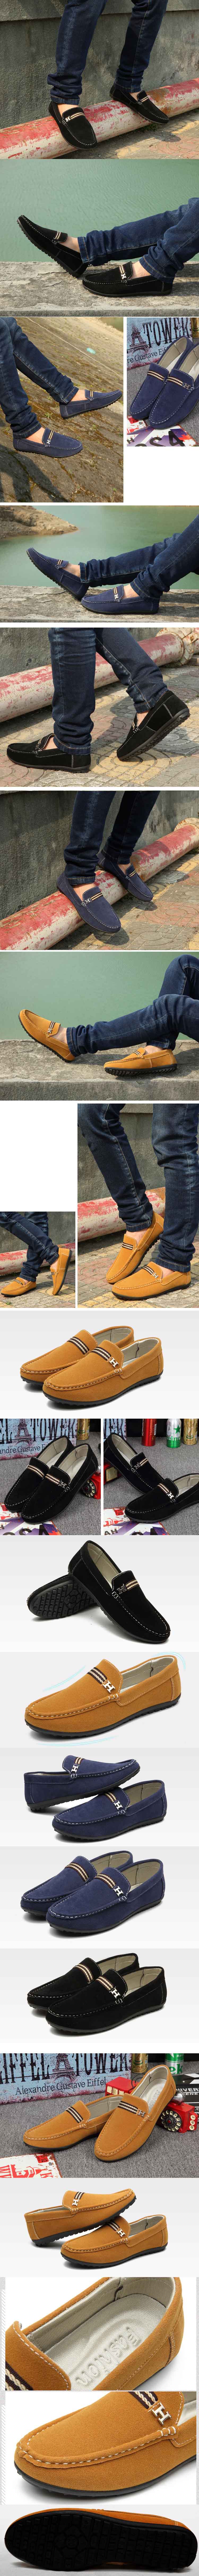 jual sepatu slip on pria keren dengan desain ala hermes, klik dan pesan online sepatu pria terlengkap hanya di pfp store